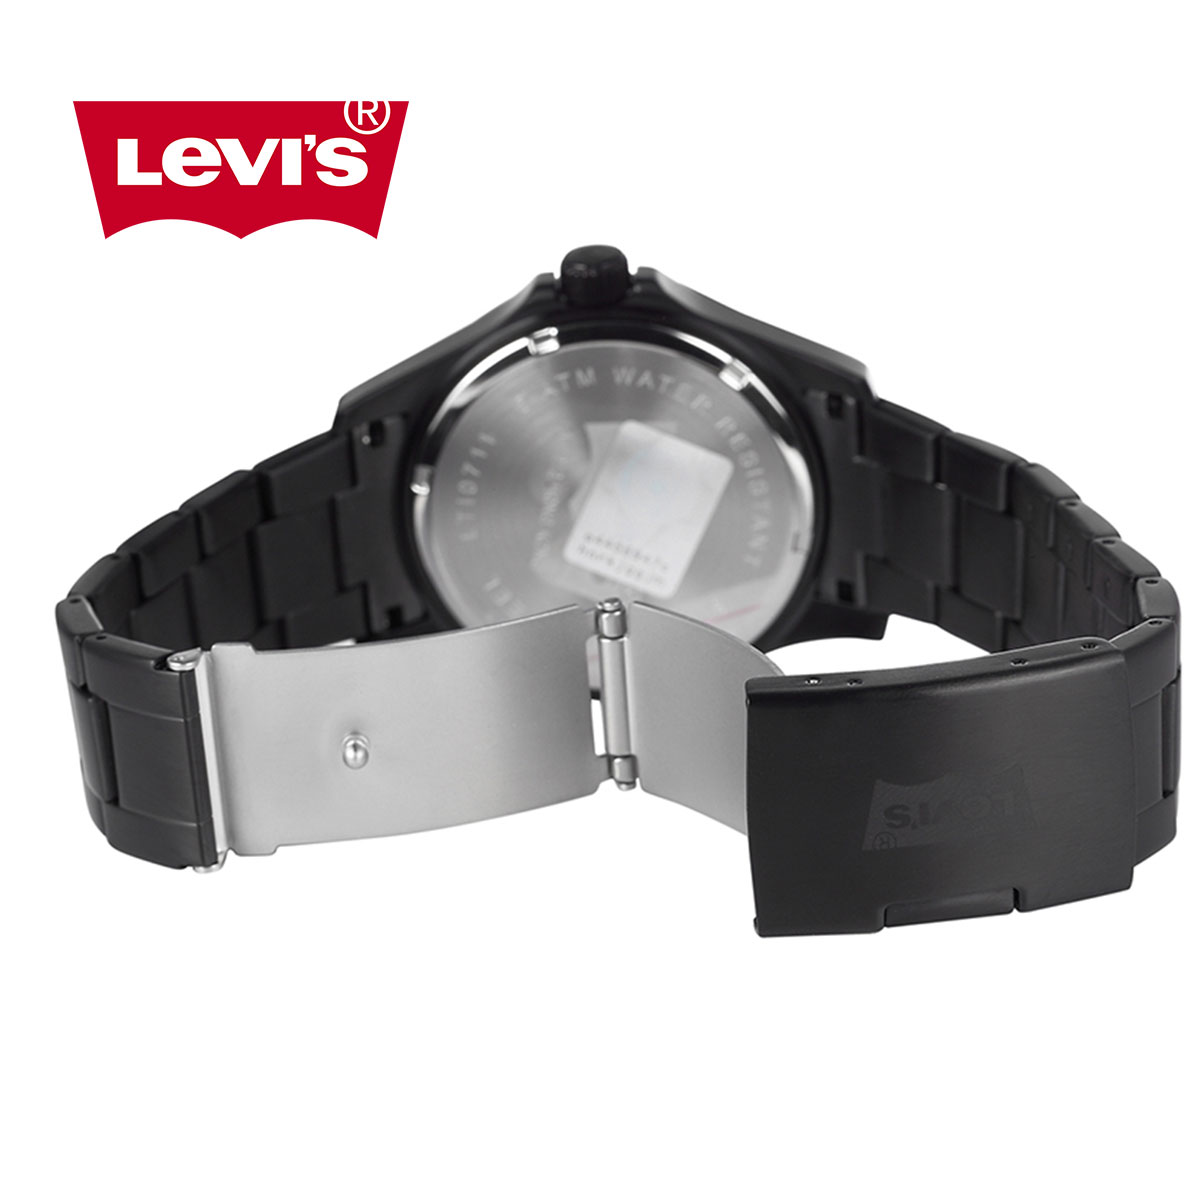 Đồng hồ nam Levis LTI07 chống nước